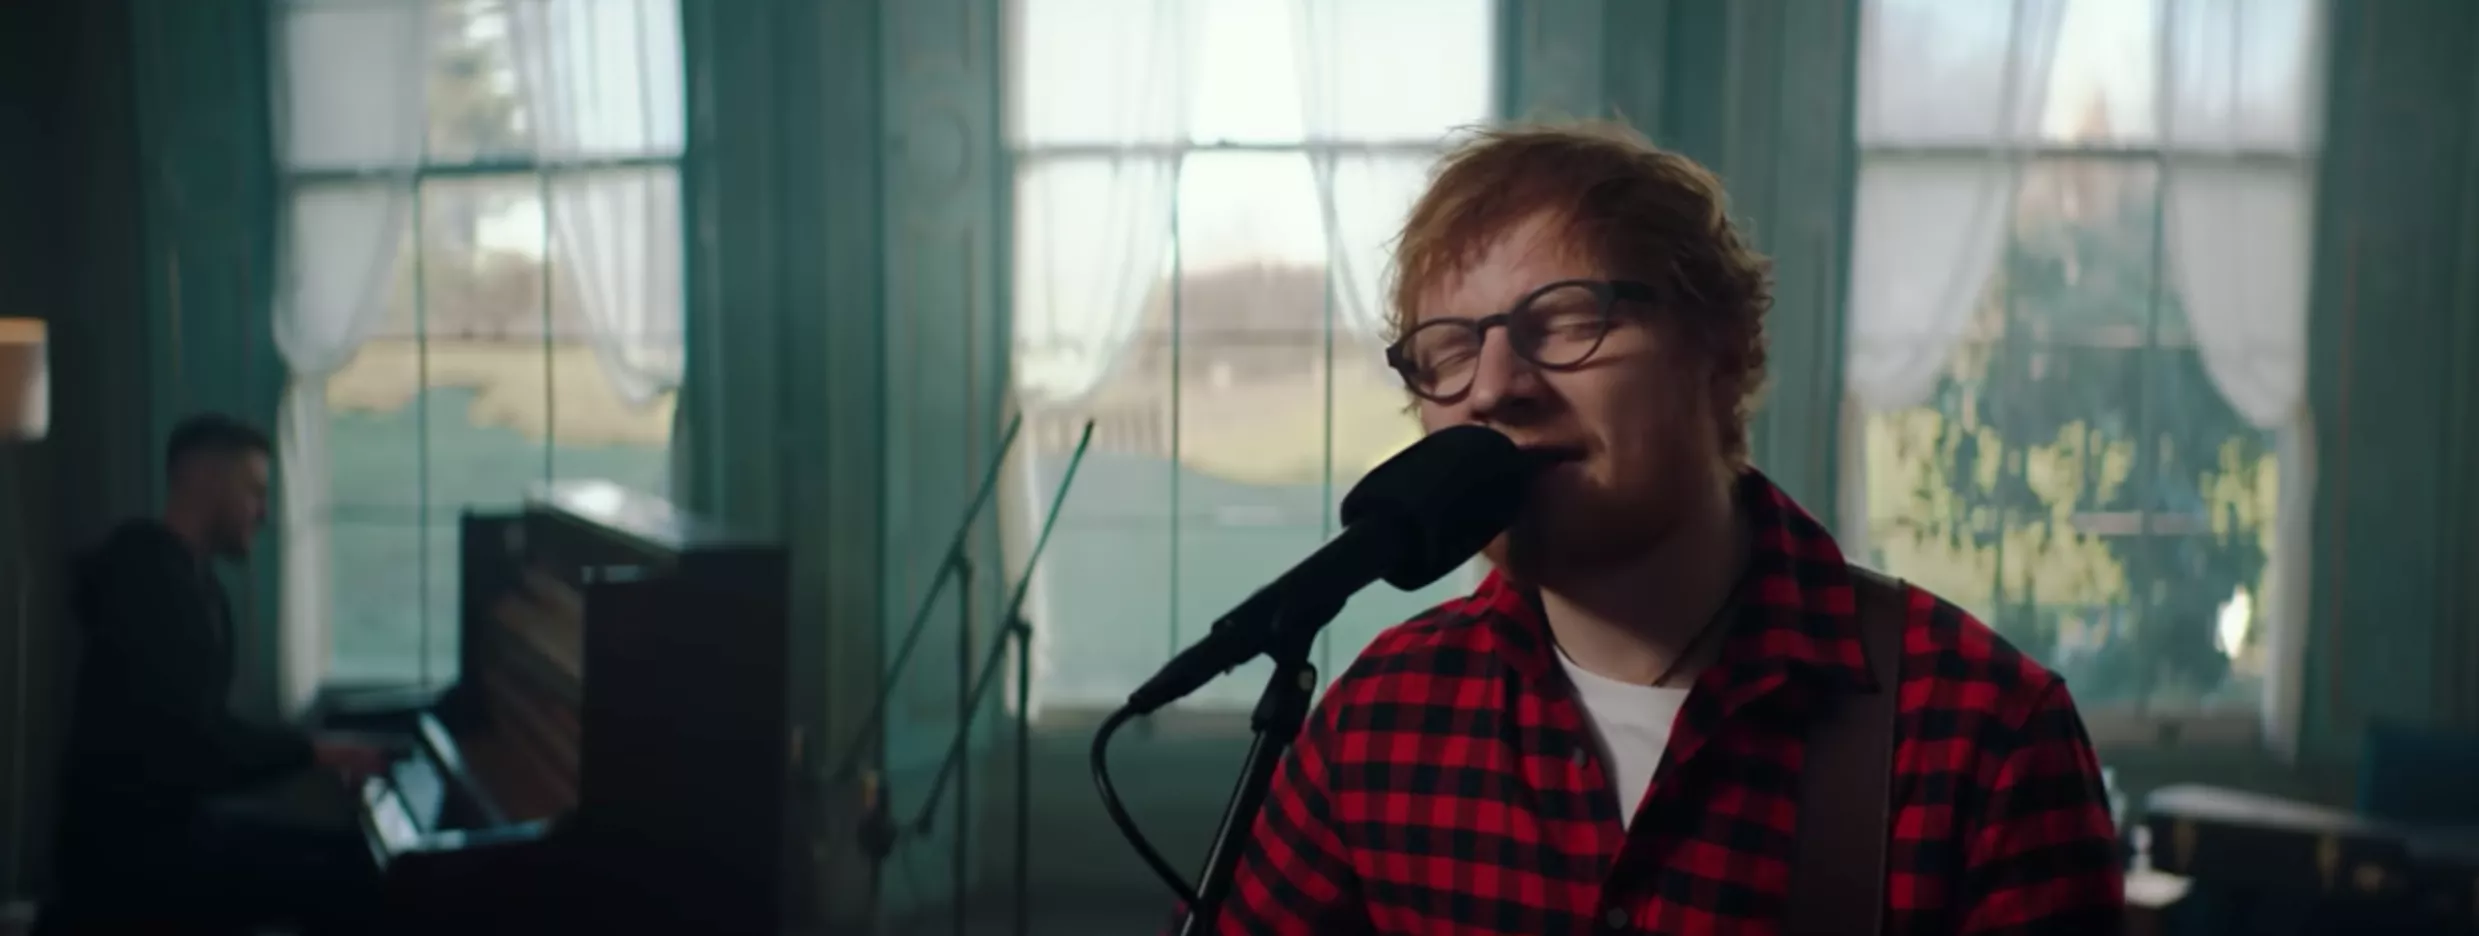 Ed Sheeran udgiver ny sang på sin fødselsdag